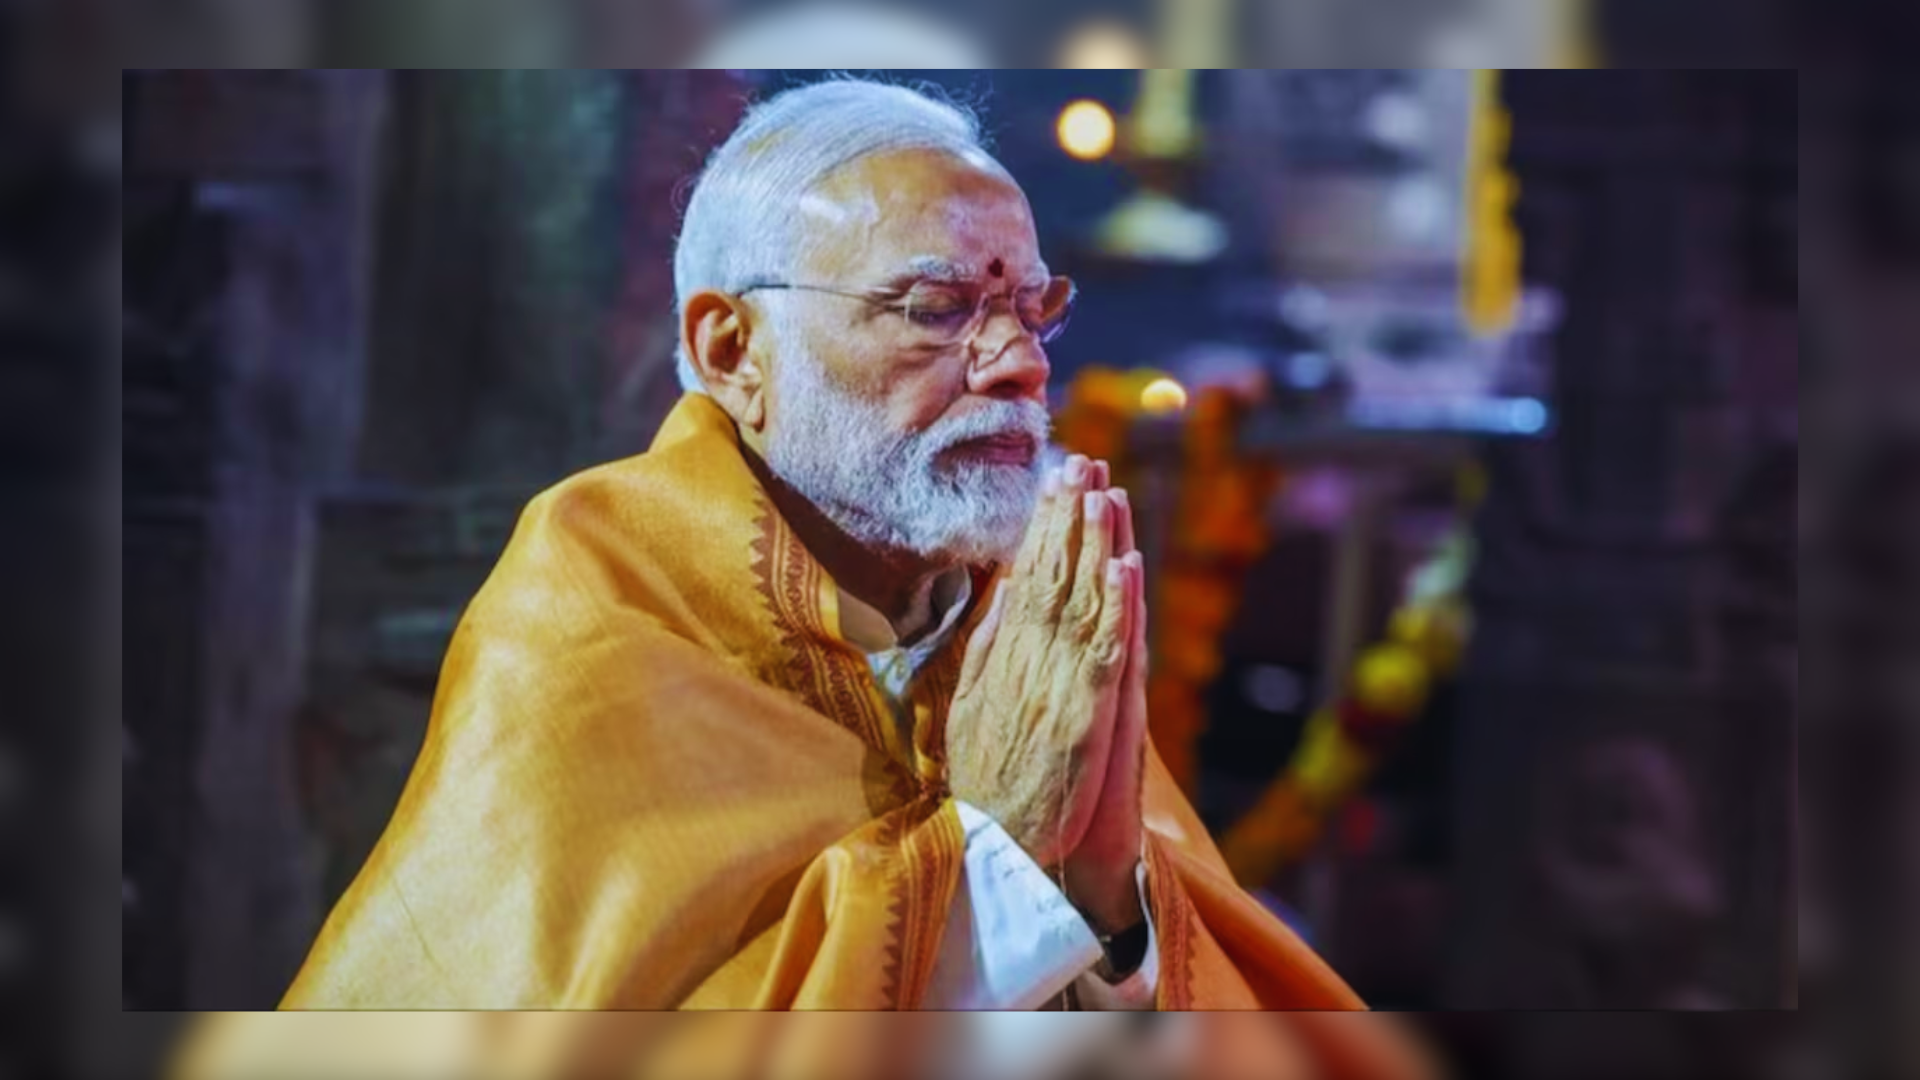 PM Modi Commences Meditative Retreat At Bhagavathy Amman Temple In Kanyakumari, Tamil Nadu